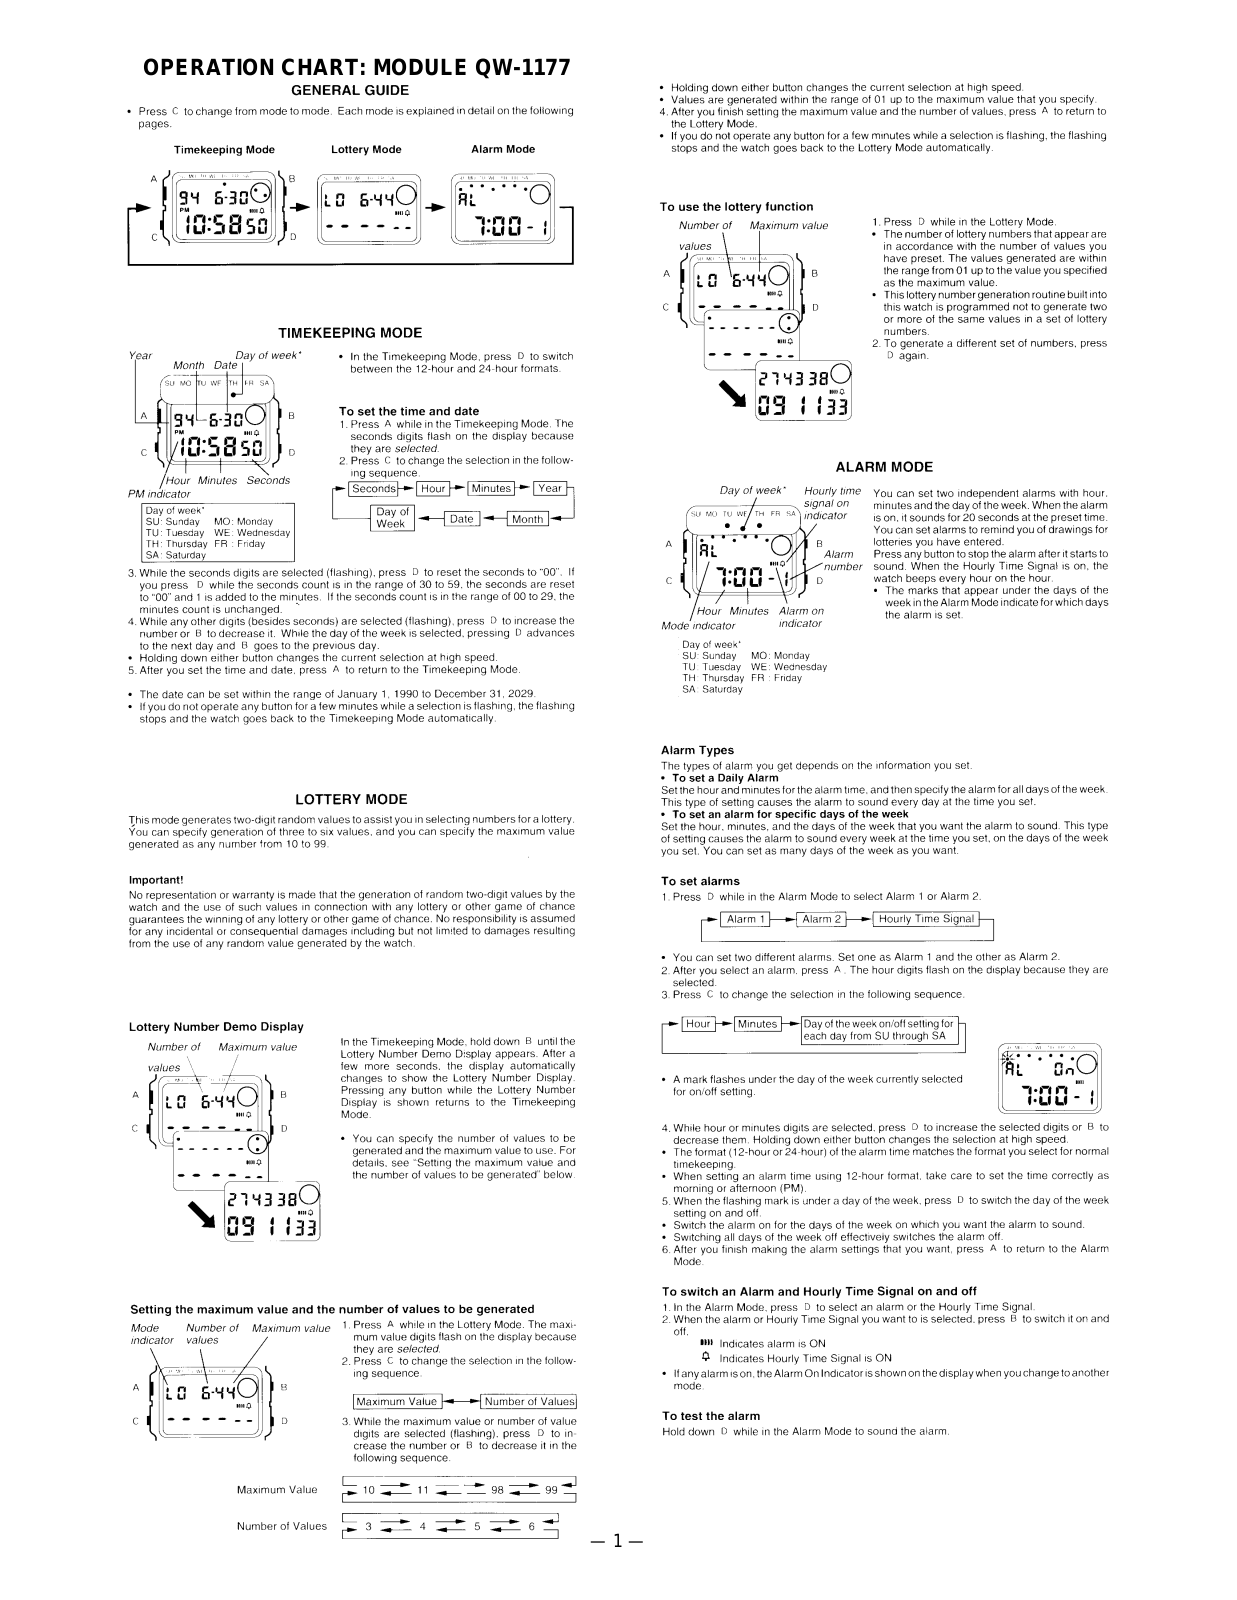 Casio 1177 Owner's Manual